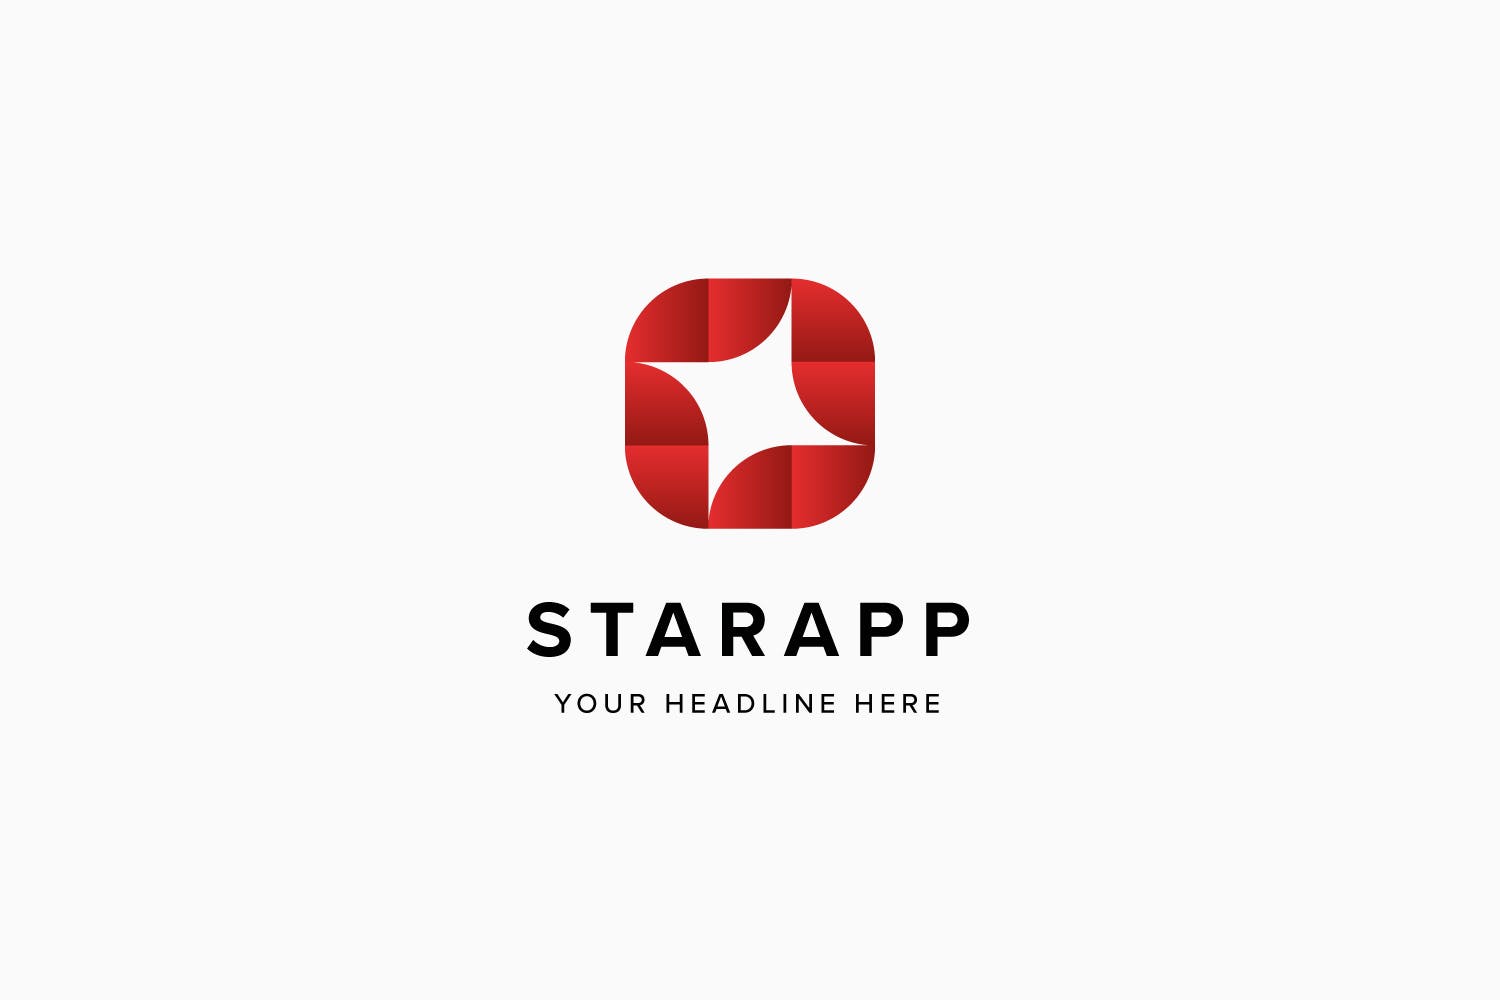 星级APP评选Logo标志设计模板素材 Star App Logo Template插图(3)